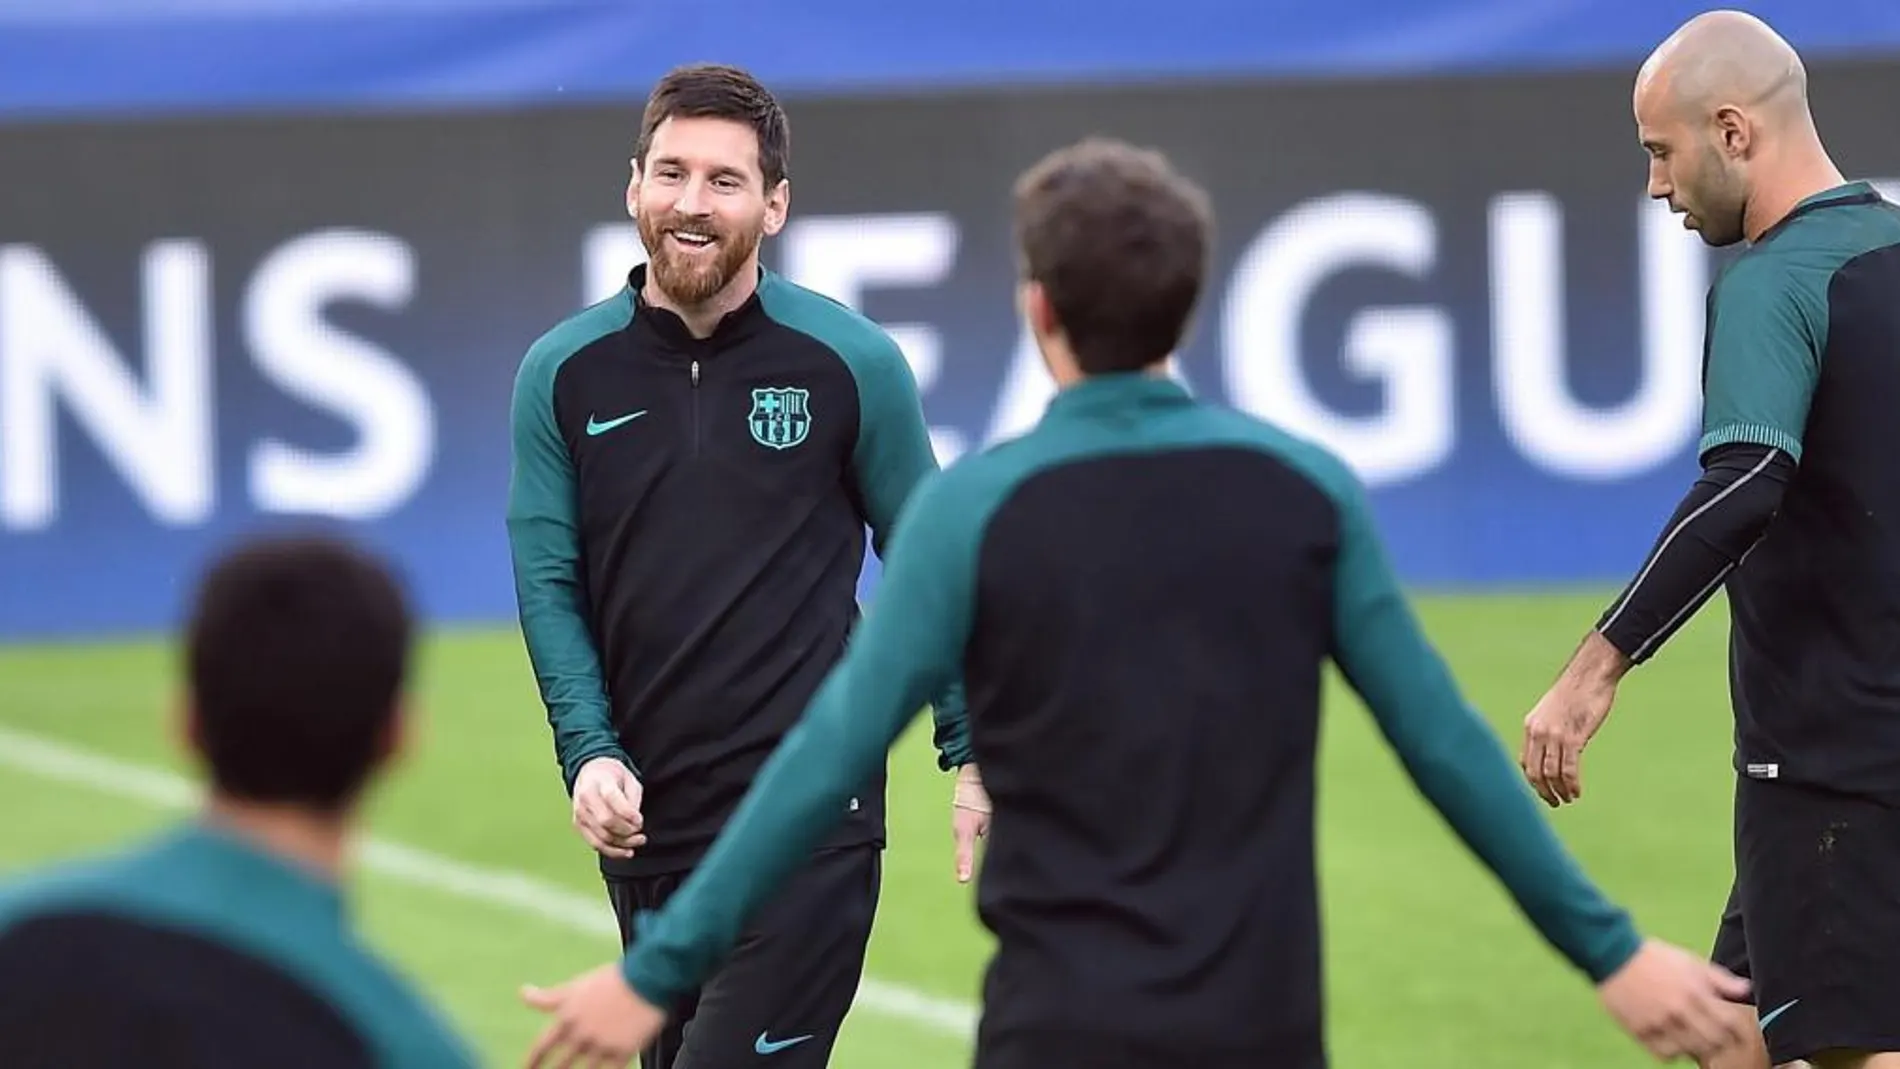 El jugador del FC Barcelona Lionel Messi participa en una sesión de entrenamiento